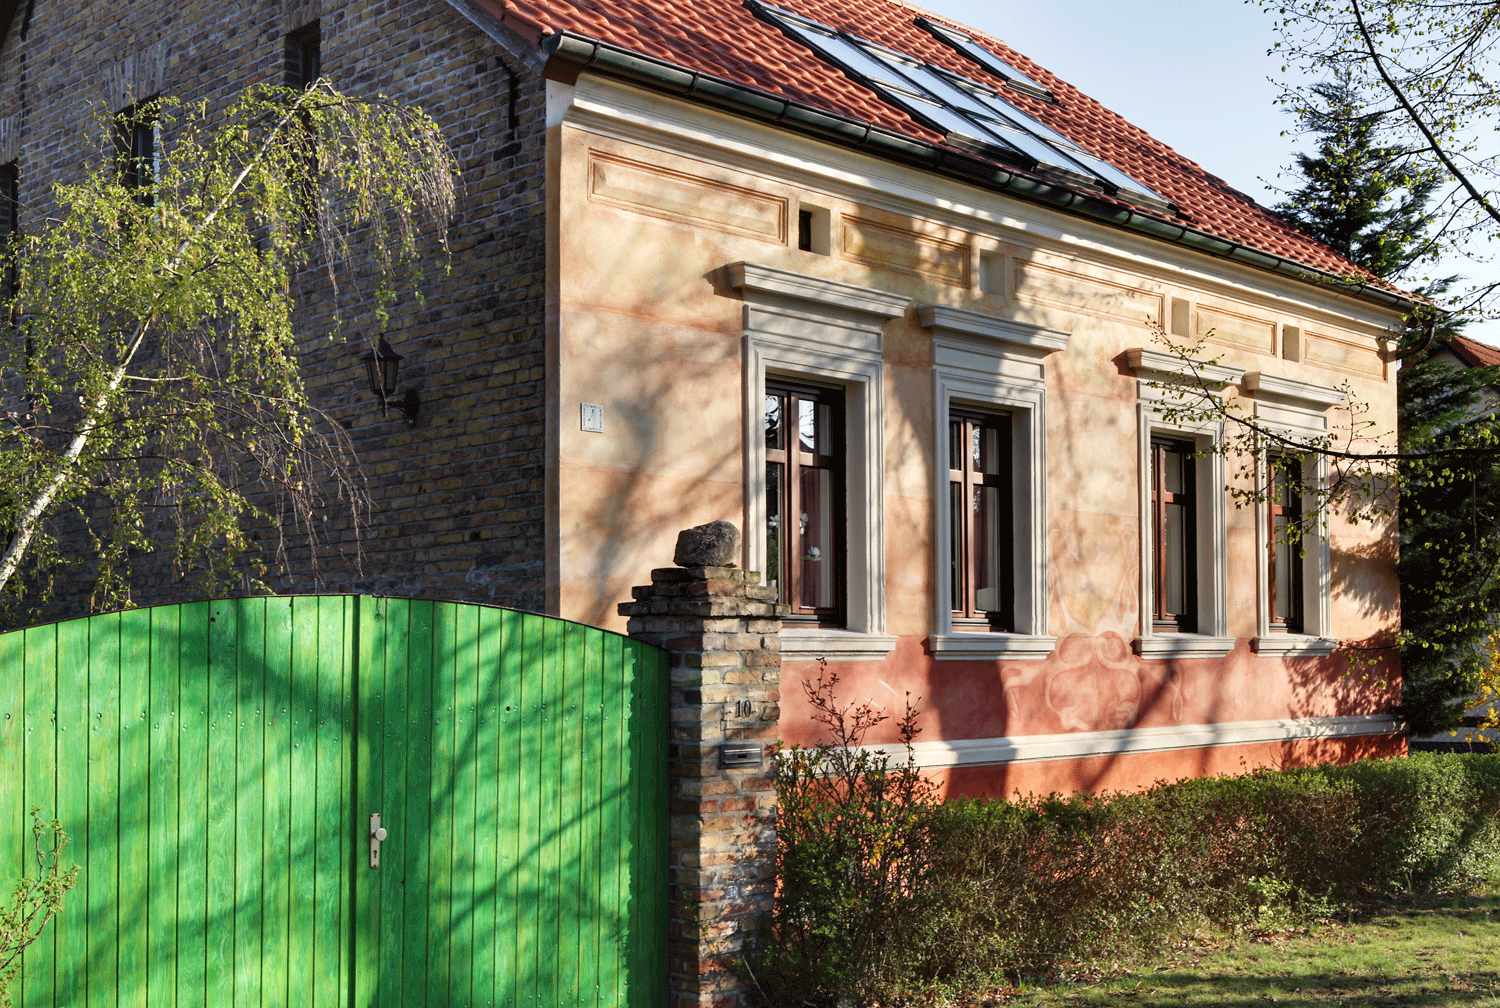 House Renovation, Gröben, Germany